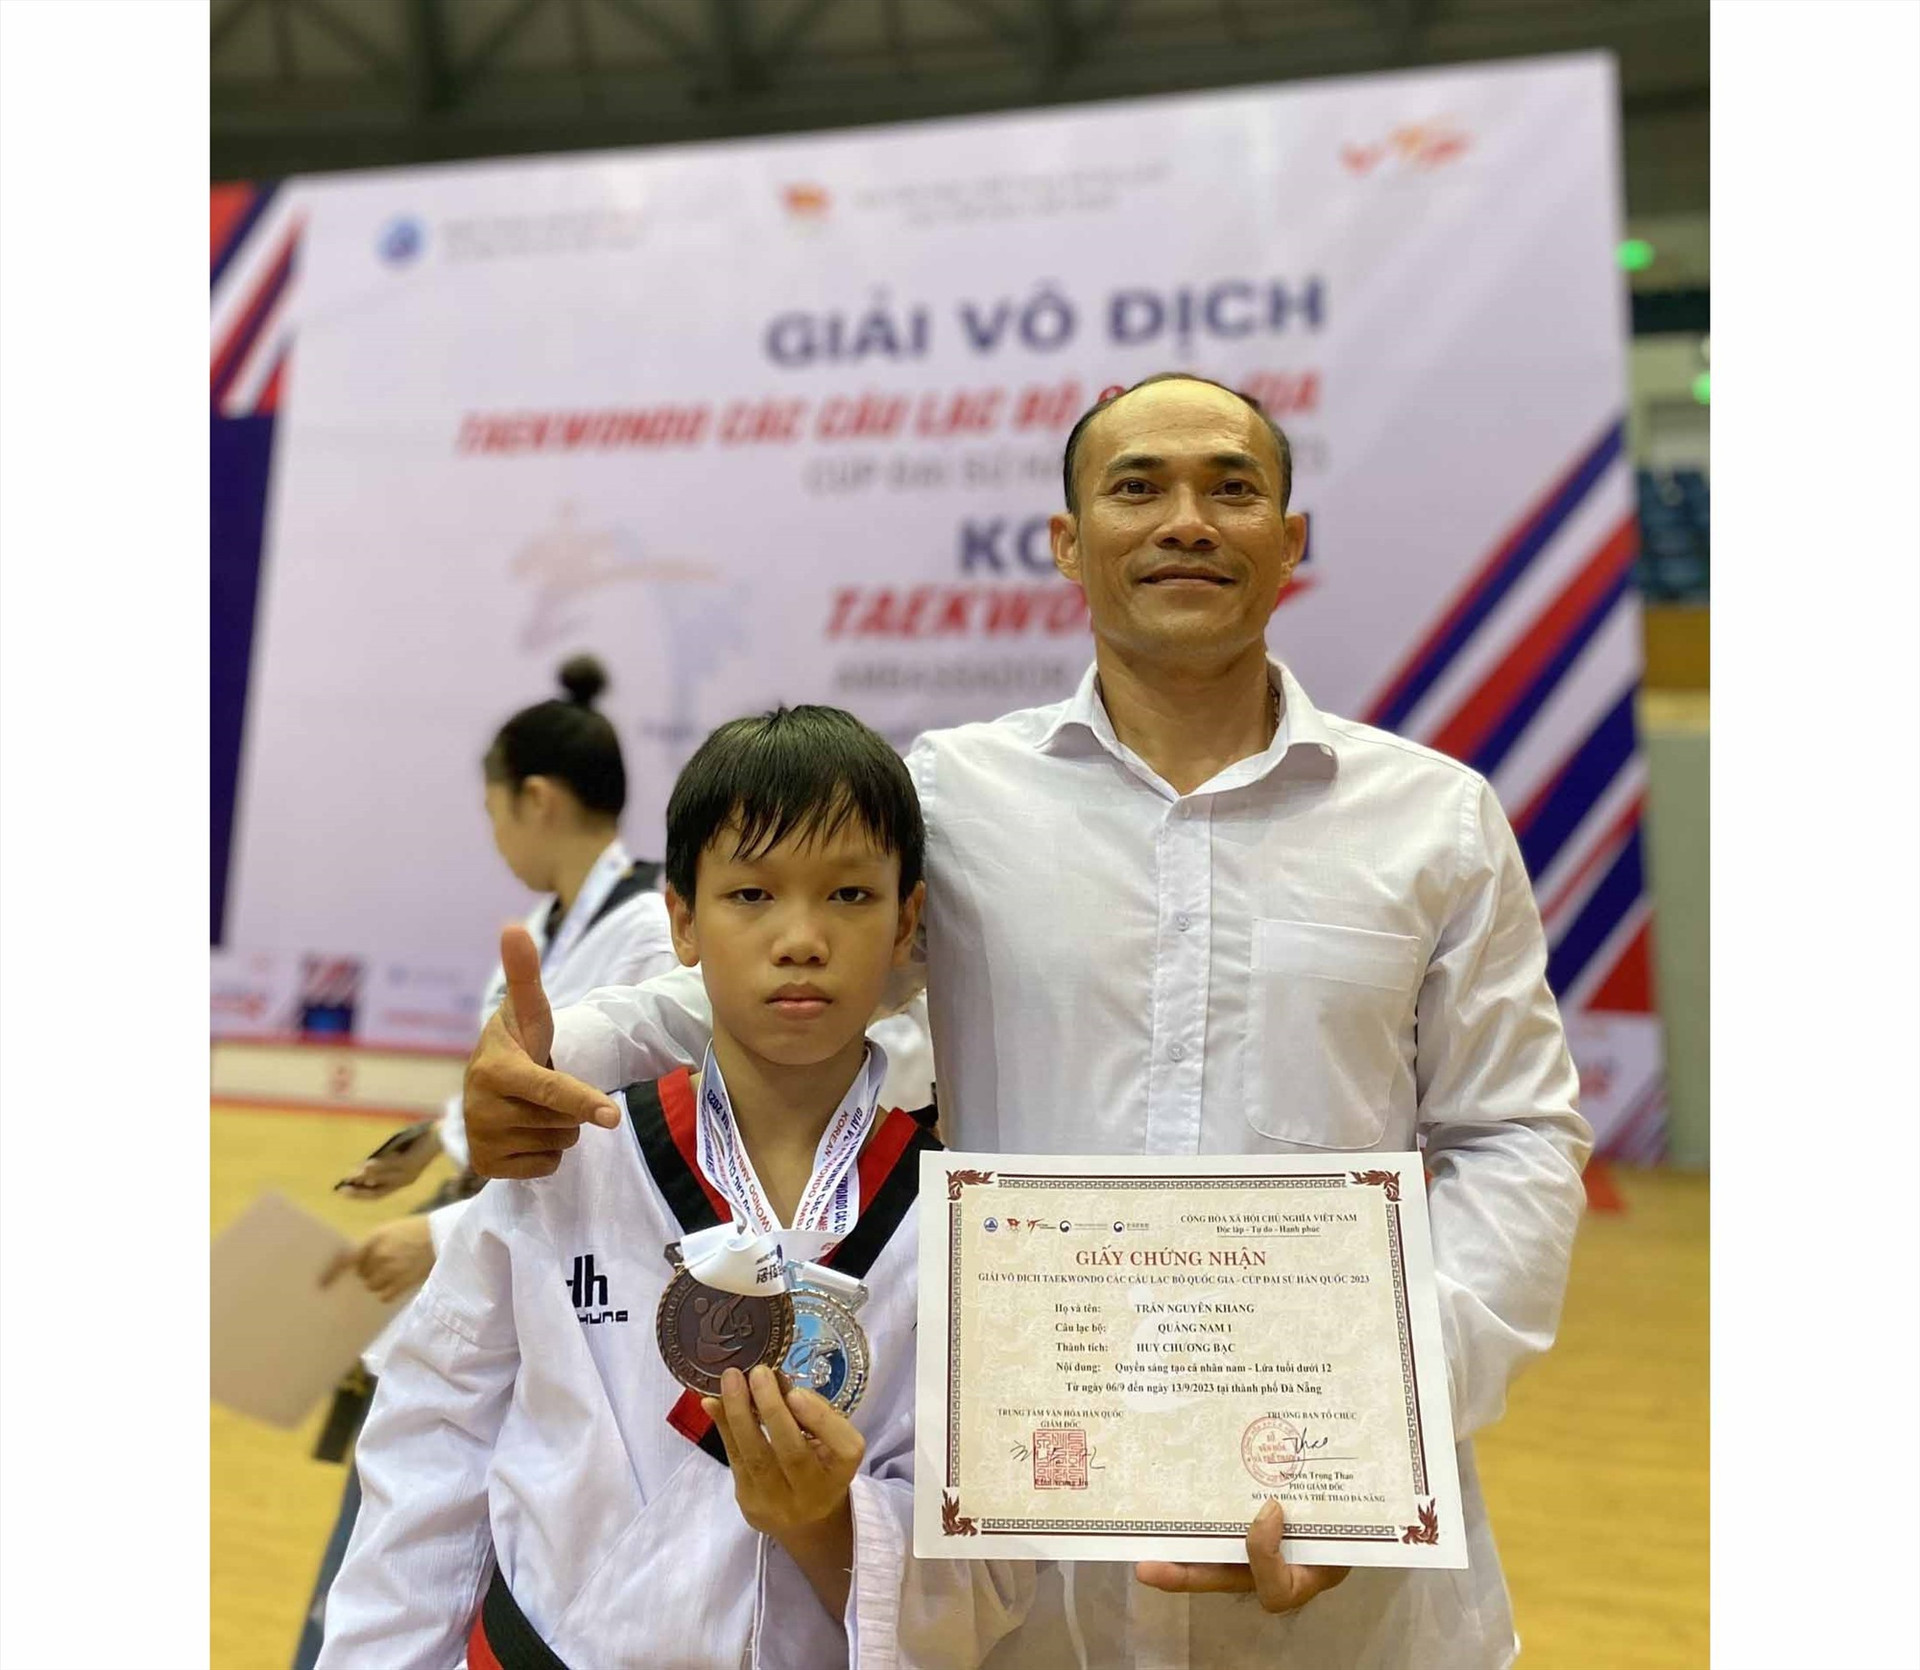 VĐV Trần Nguyên Khang đạt 1 HCB Quyền sáng tạo cá nhân nam U12 và 1 HCĐ đối kháng cá nhân nam U12 hạng cân 31 kg. Ảnh: T.T.D